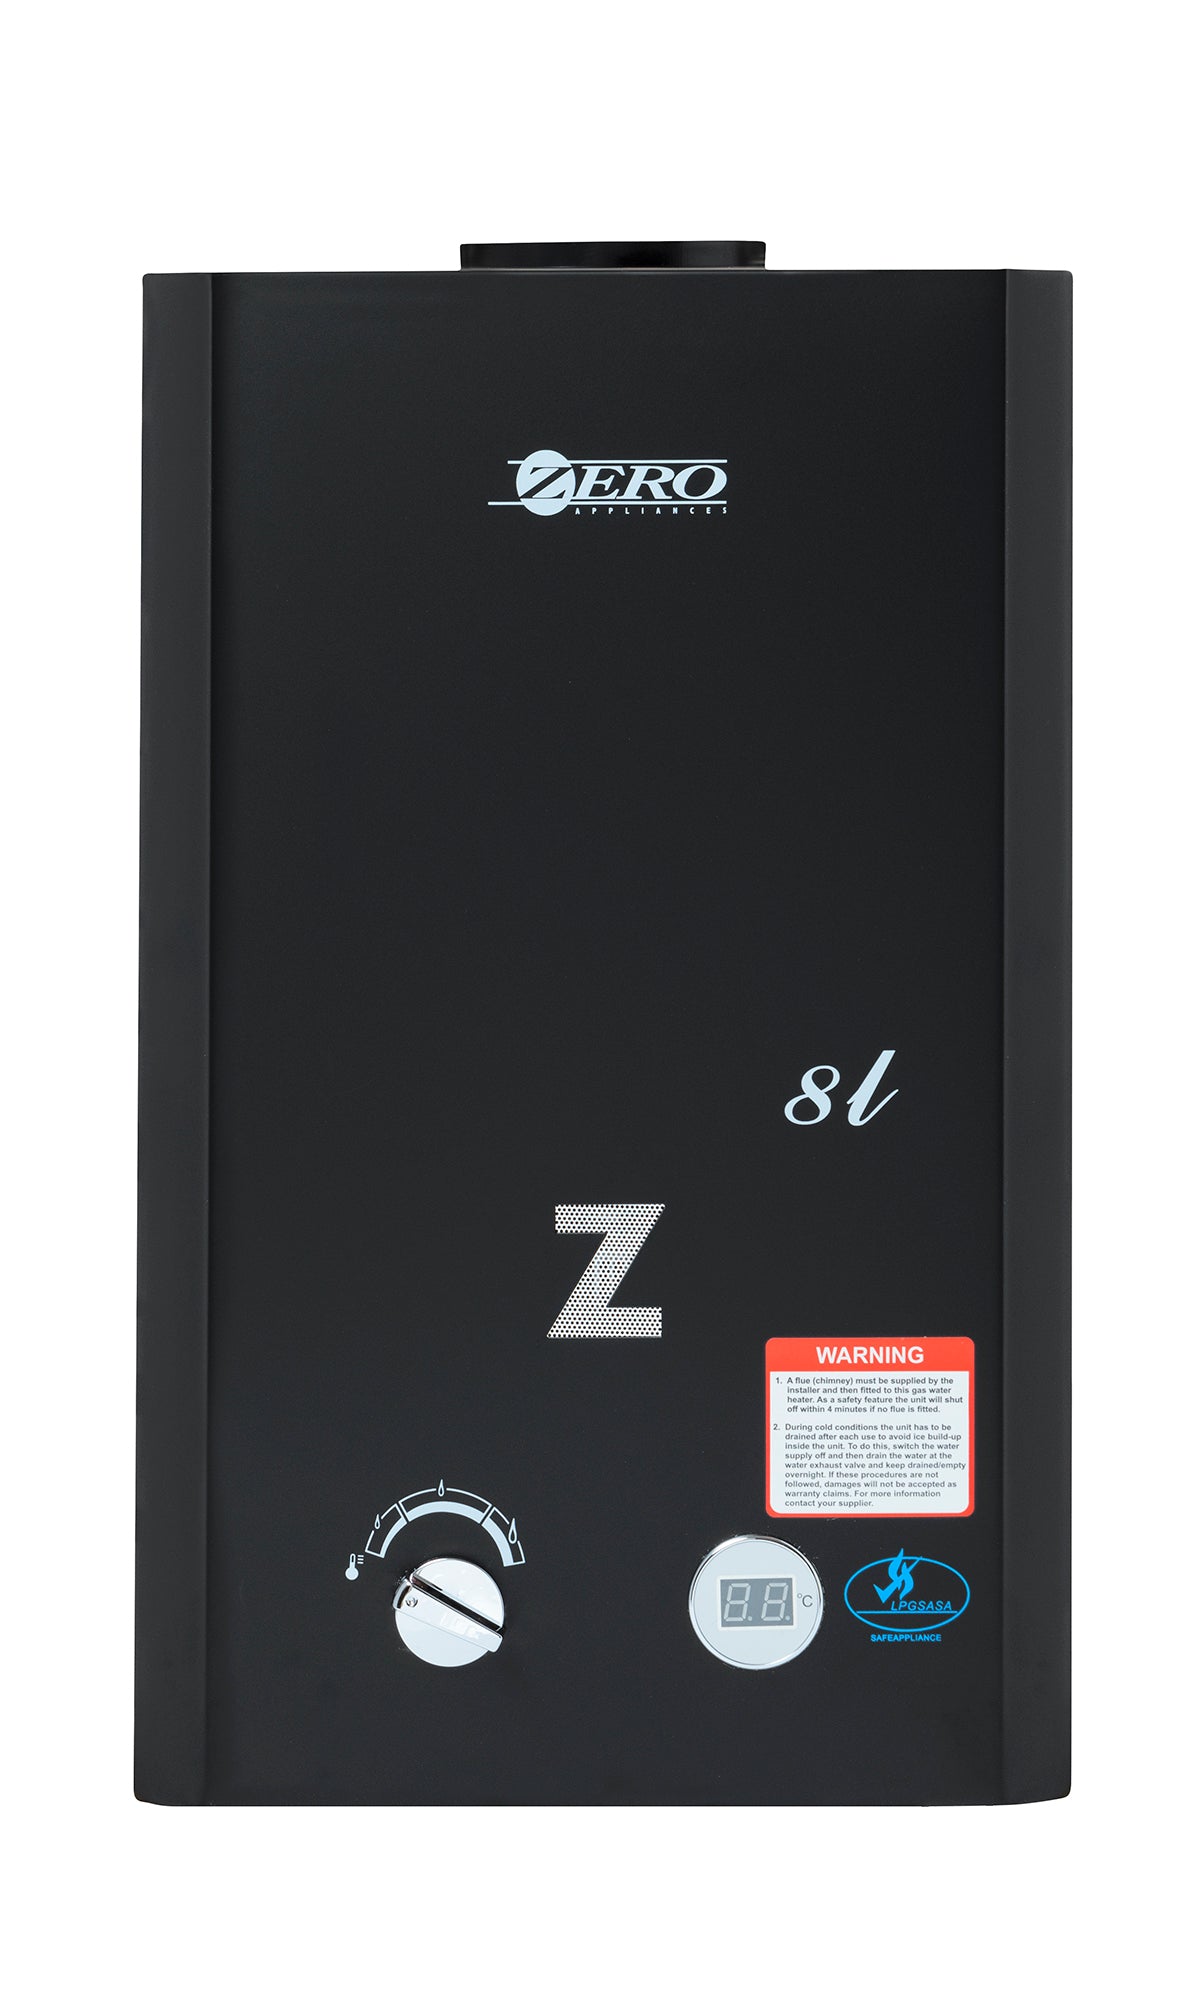 Zero Appliances 8L Low Pressure Gas Geyser ZERO